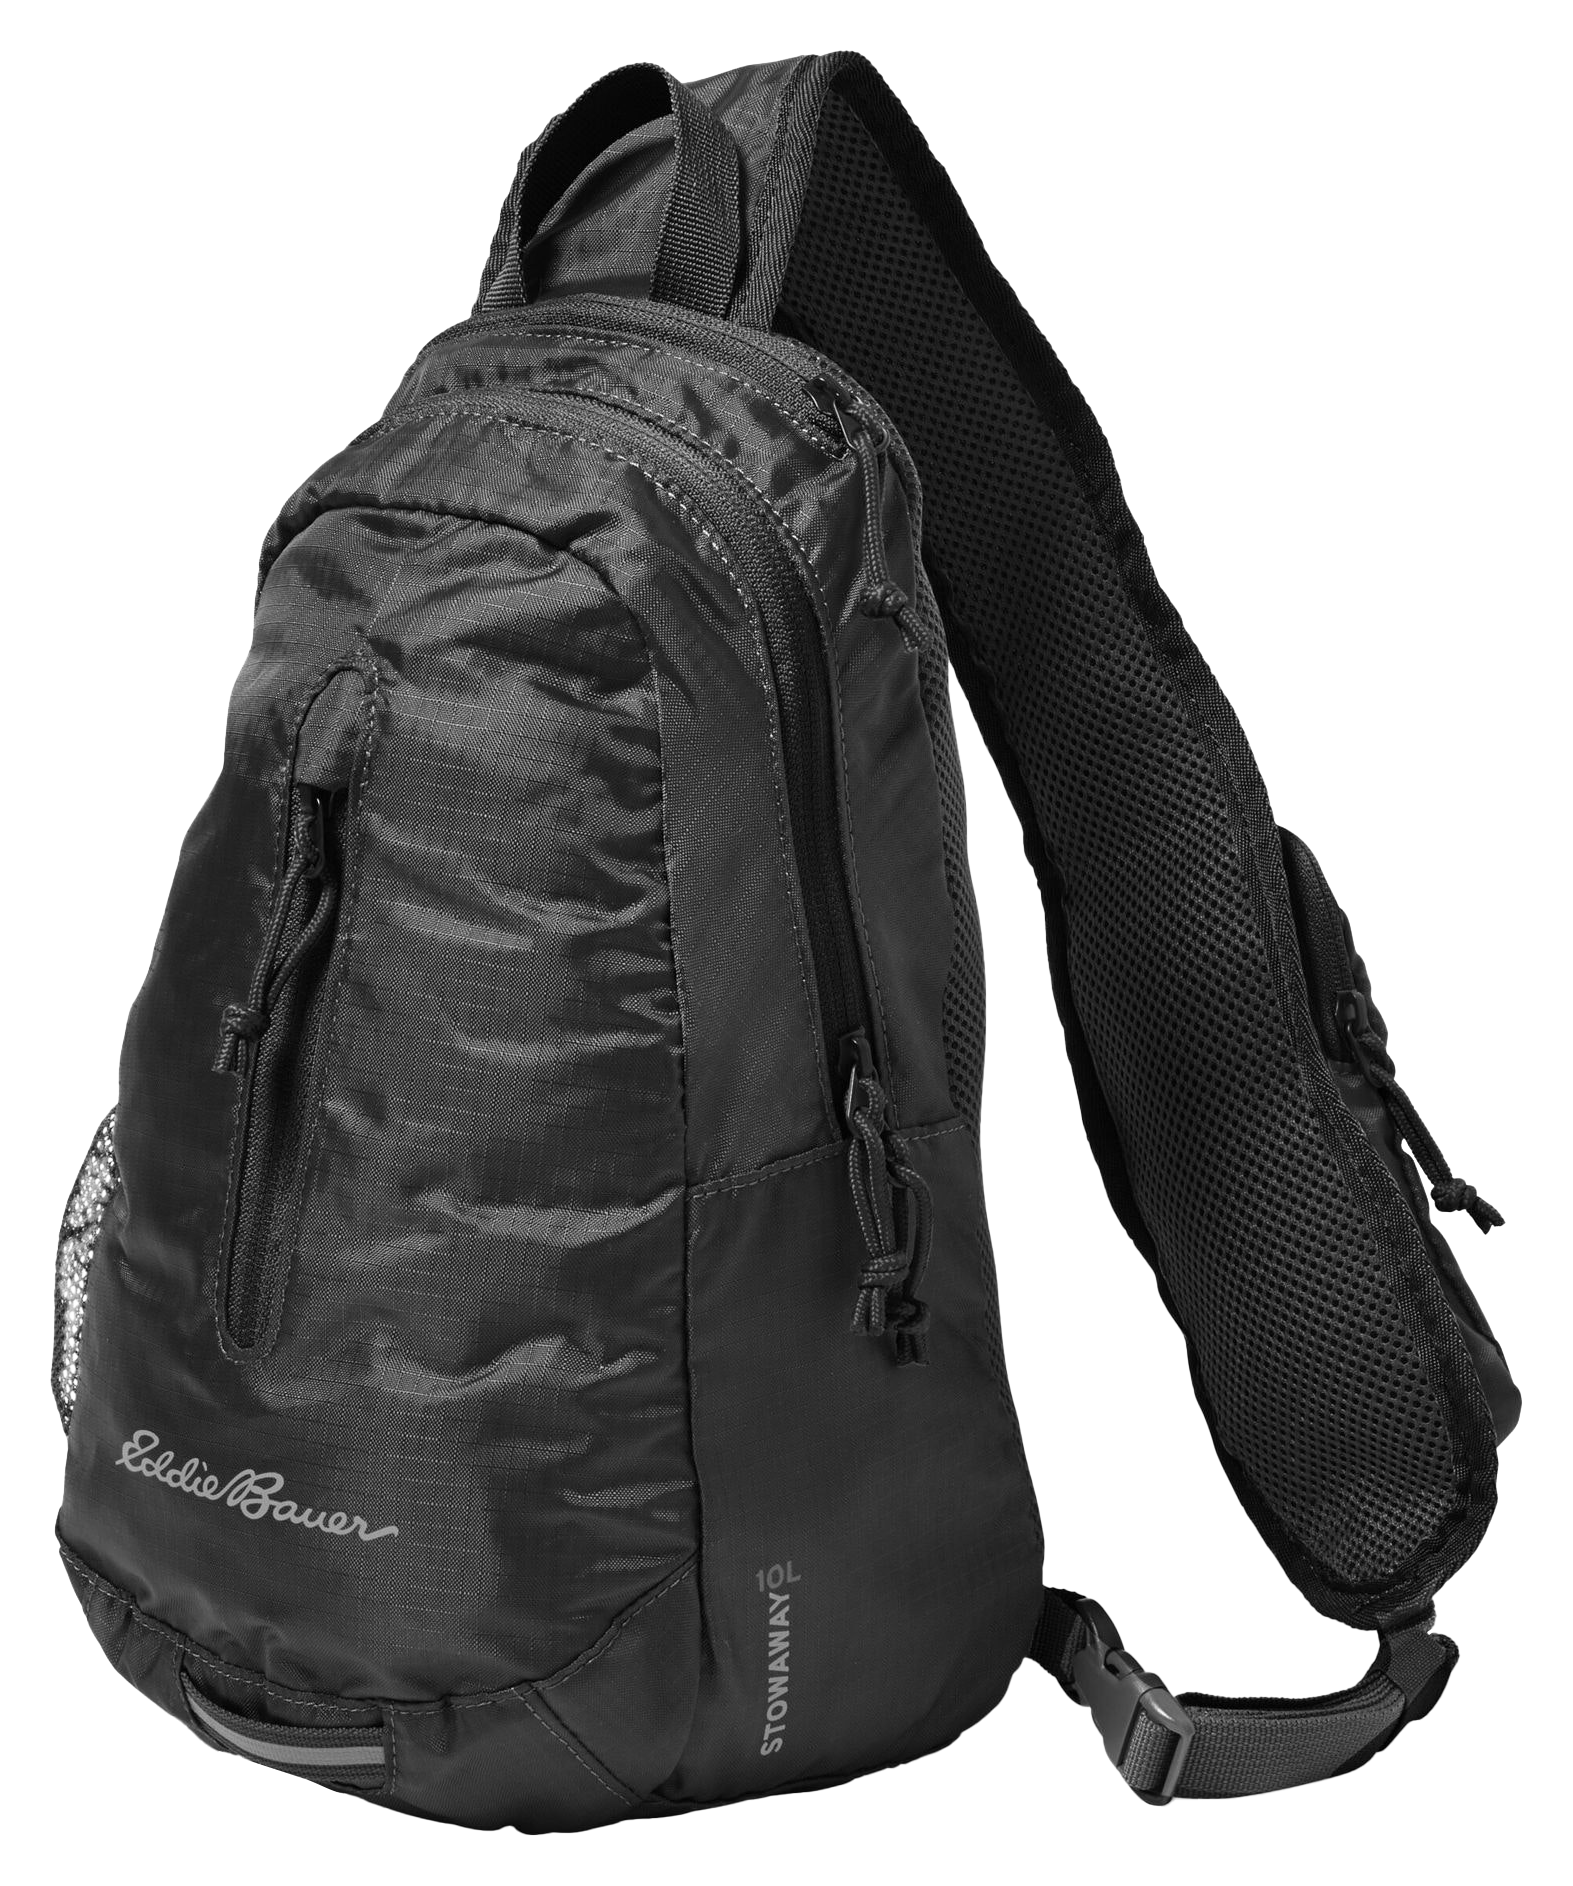 Eddie Bauer Stowaway Packable Sling 3.0 Backpack - 10L - Onyx